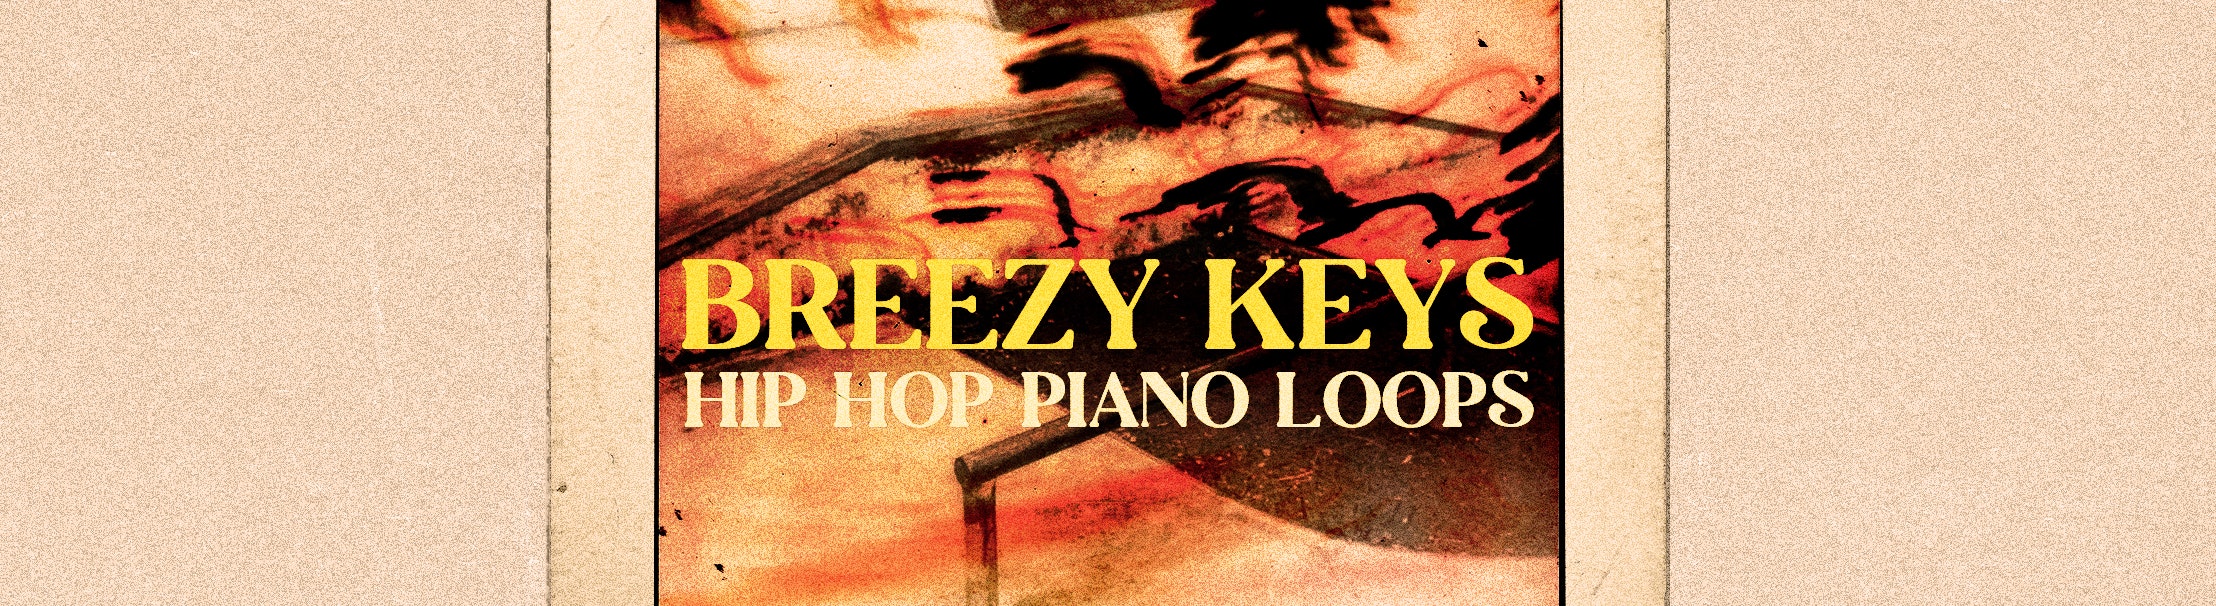 Breezy Keys Hip Hop Piano Loops